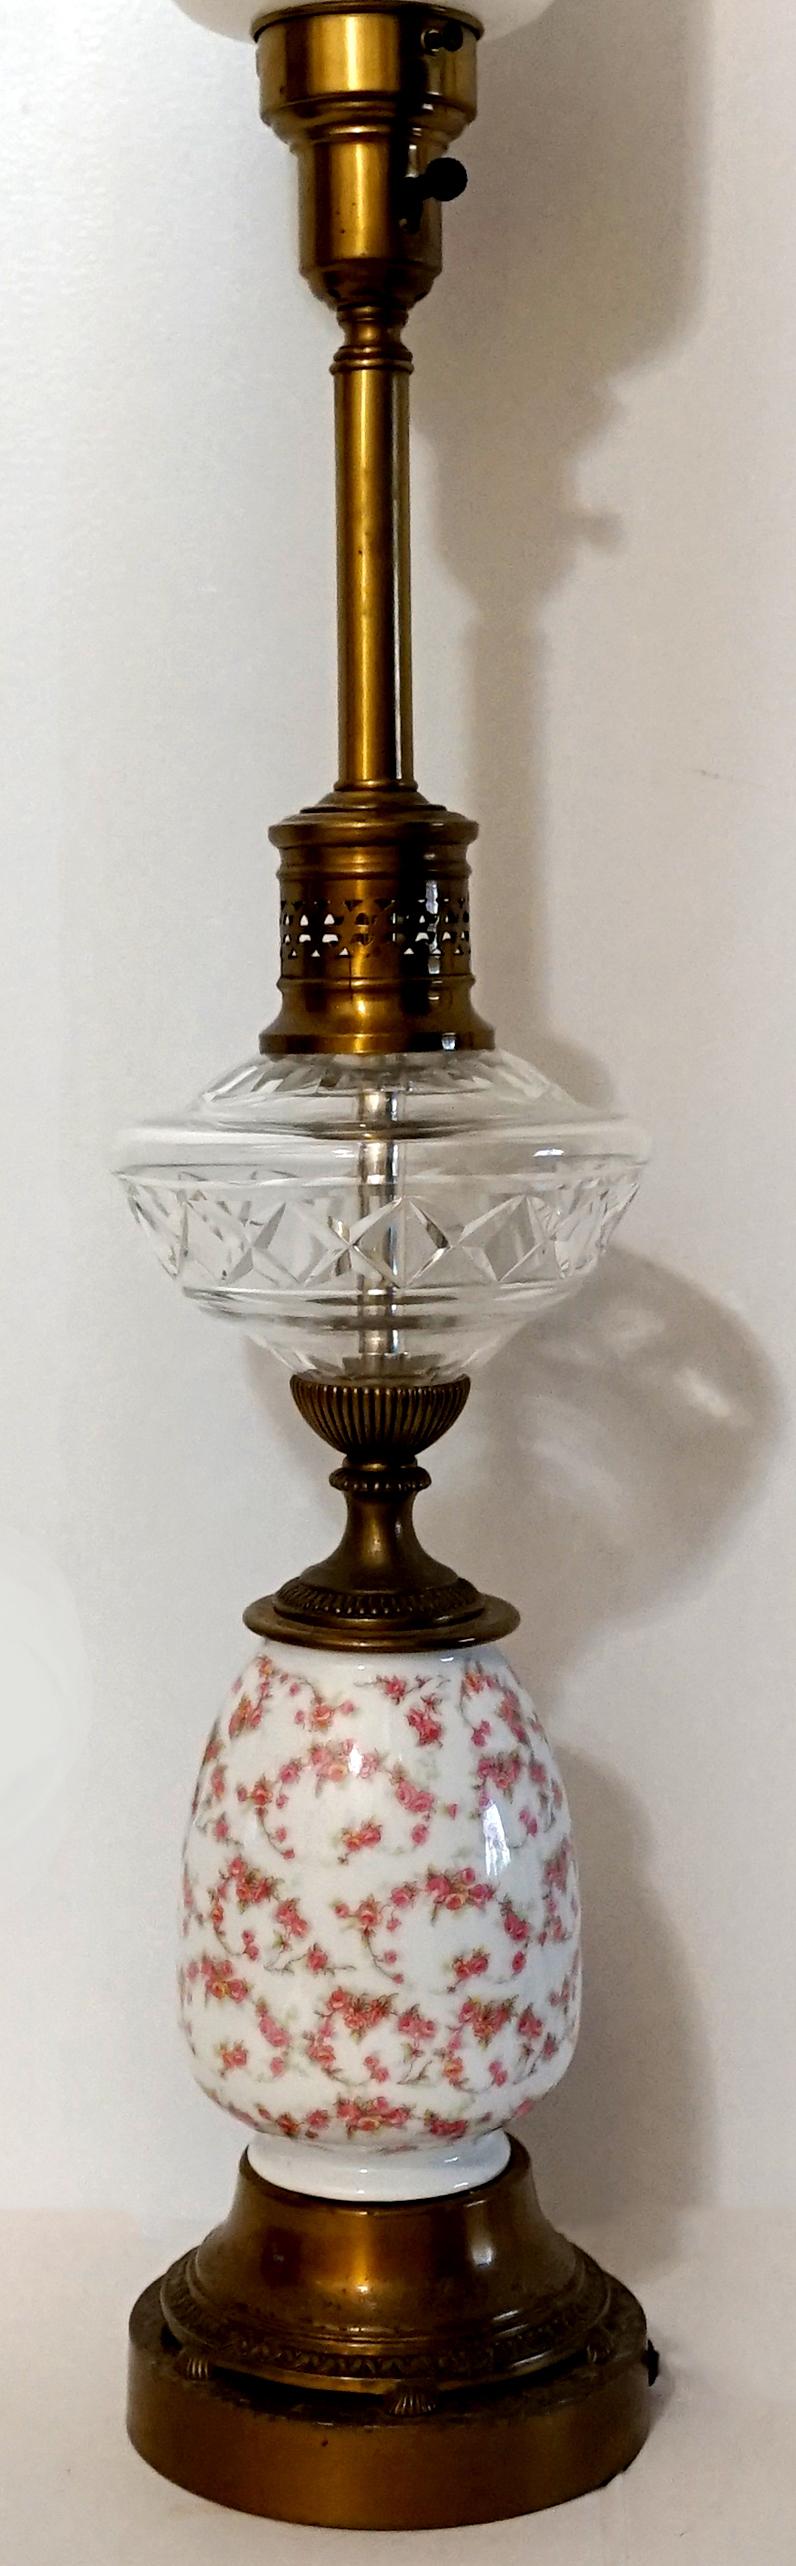 Handgemalte Rosen auf Porzellan und ein Lampenschirm aus Milchglas bilden den Mittelpunkt dieser romantischsten aller englischen Lampen, die auf einem hohen runden Messingfuß mit schöner Patina ruht. Die Lampe steht auf einer Messingstange über